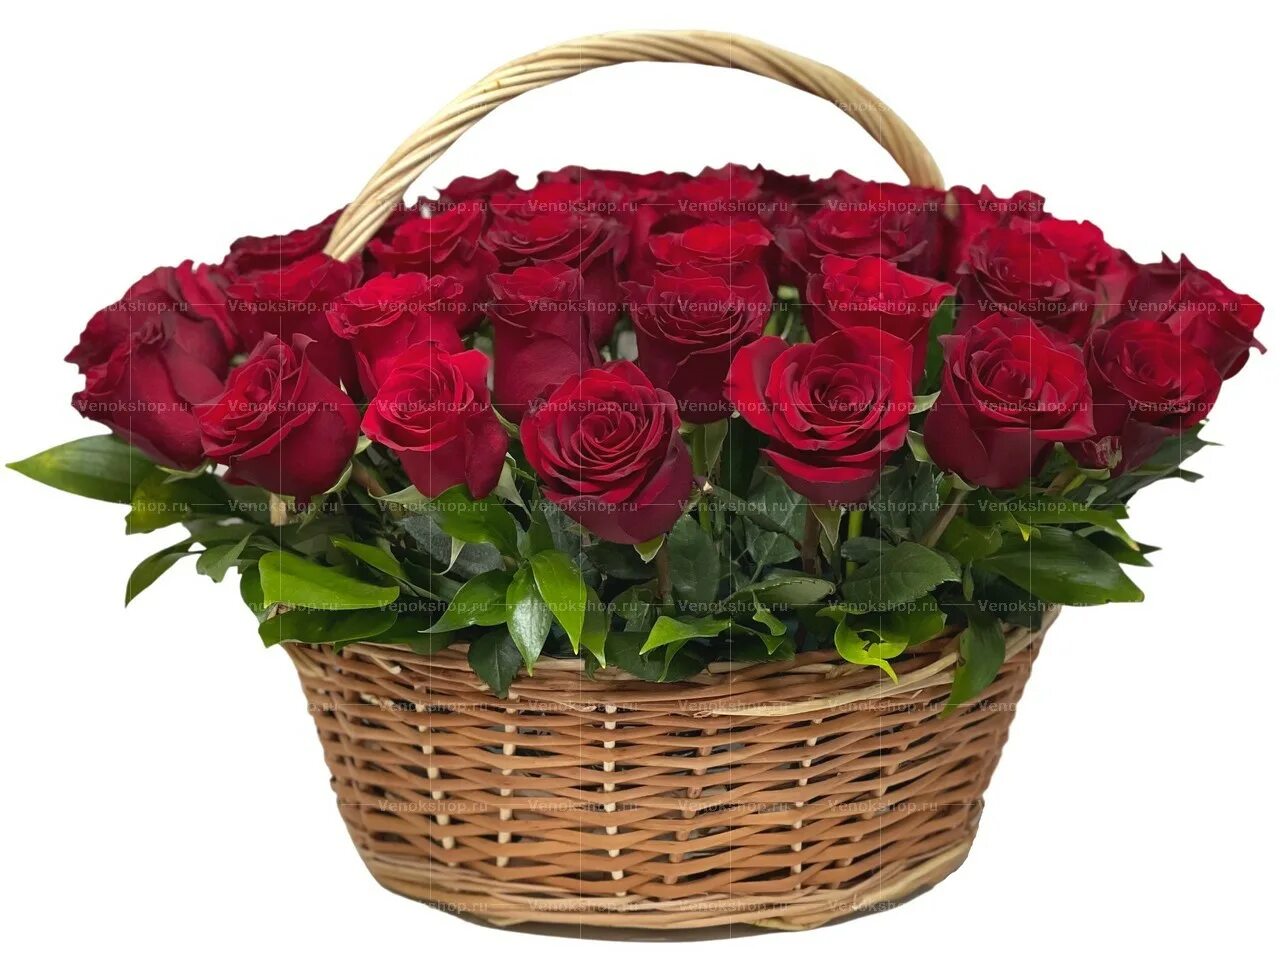 Купить розы в хабаровске. Корзина цветов. Букет цветов в корзинке. Корзинки из роз. Розы в плетеной корзине.